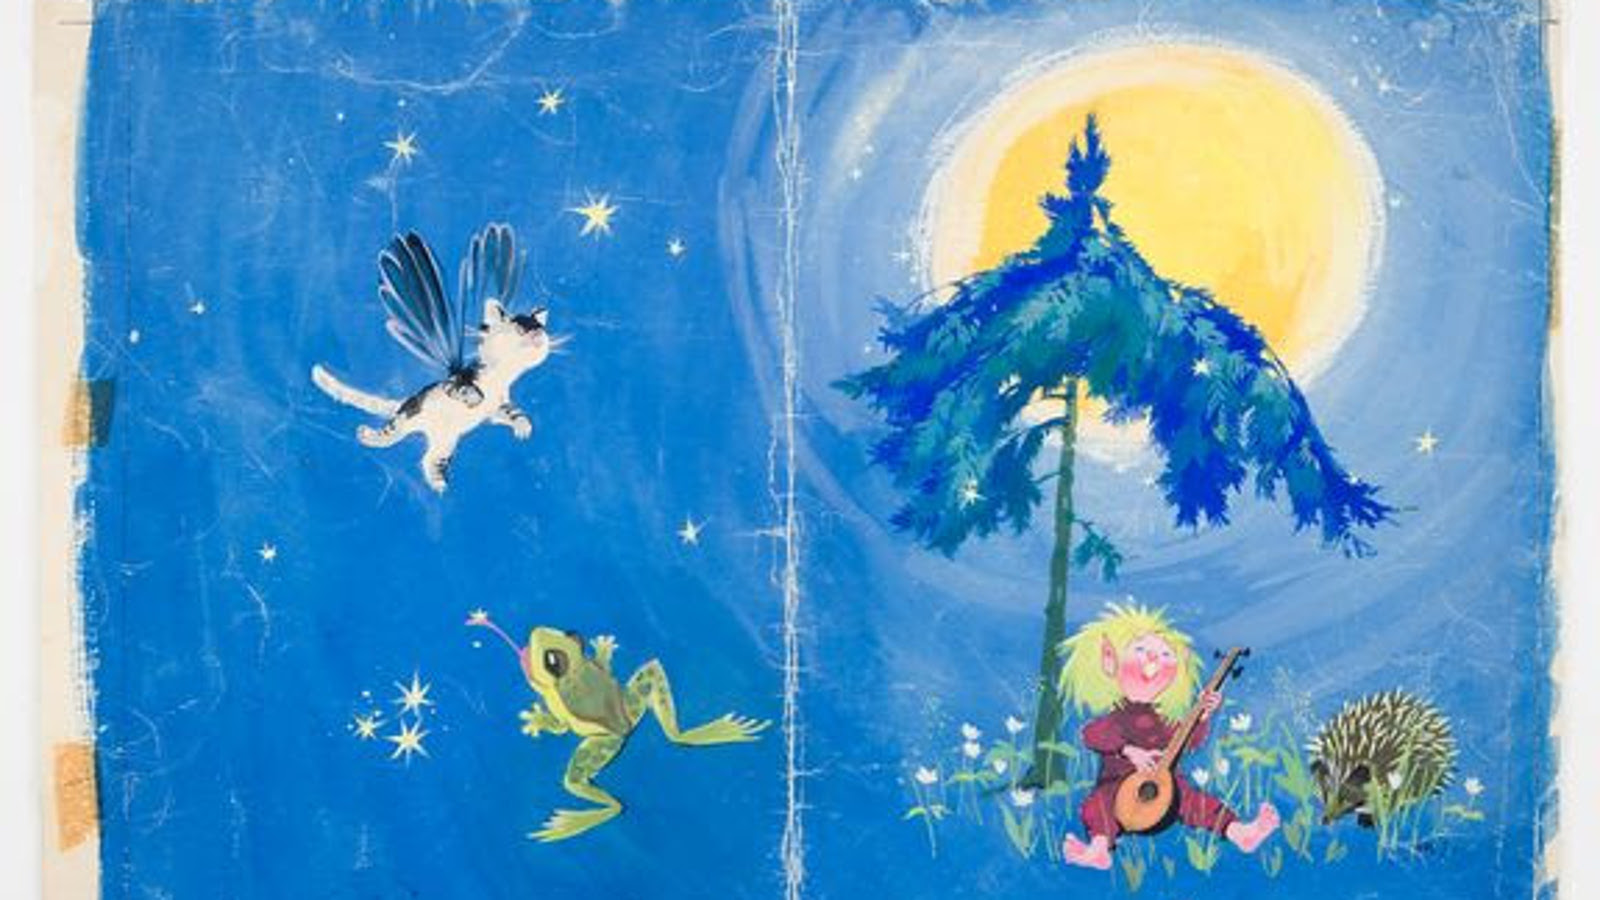 Kuvassa on sininen tausta ja siinä tepastelee Tiitiäisen hahmo sinisen kuusen alla soittaen luuttua ja takana lentelee lintu sekä pomppii sammakko. Oikealla paistaa iso kuu.